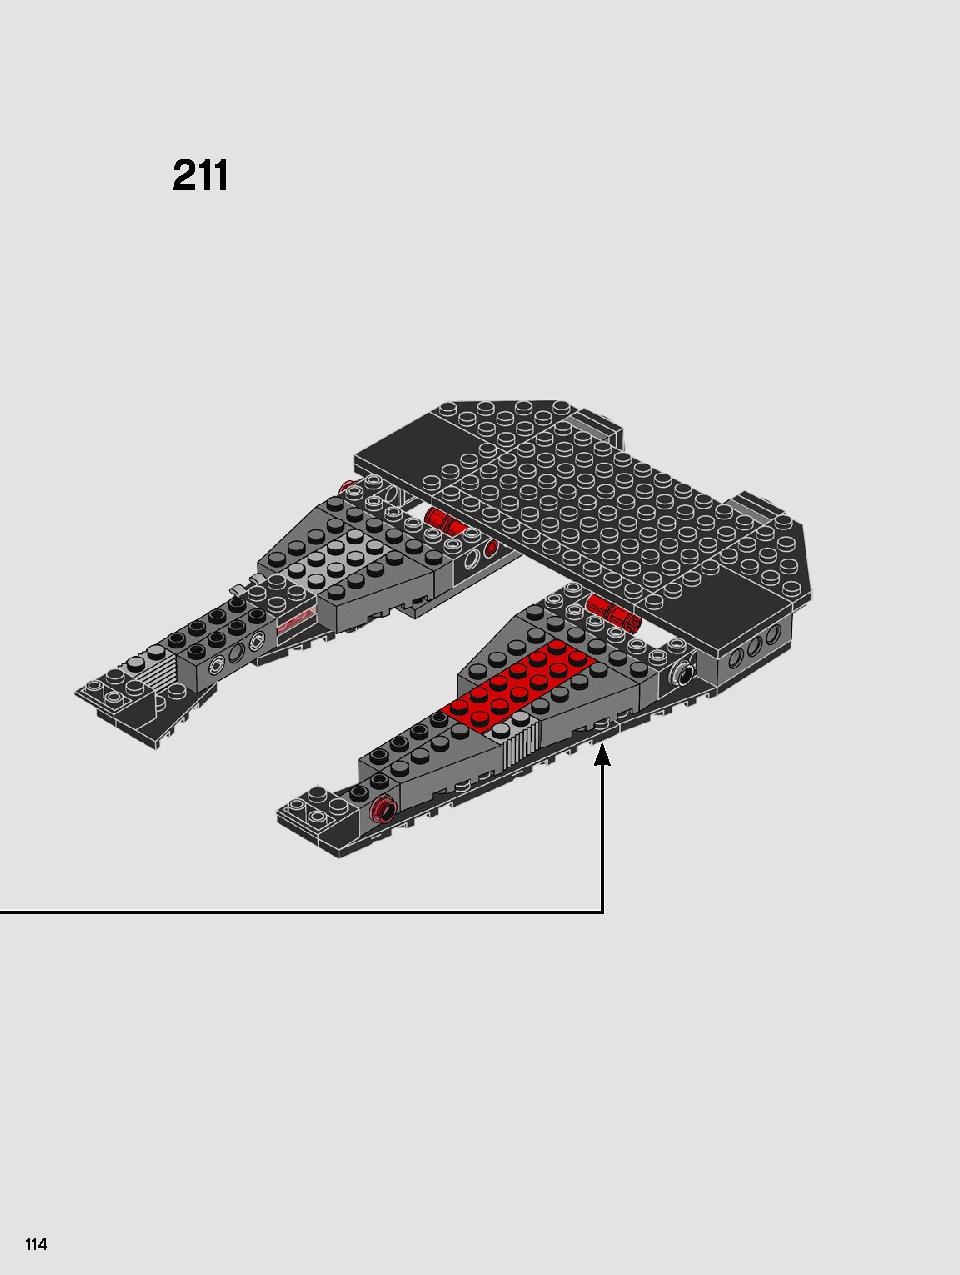 스타워즈 카일로 렌의 셔틀™ 75256 레고 세트 제품정보 레고 조립설명서 114 page